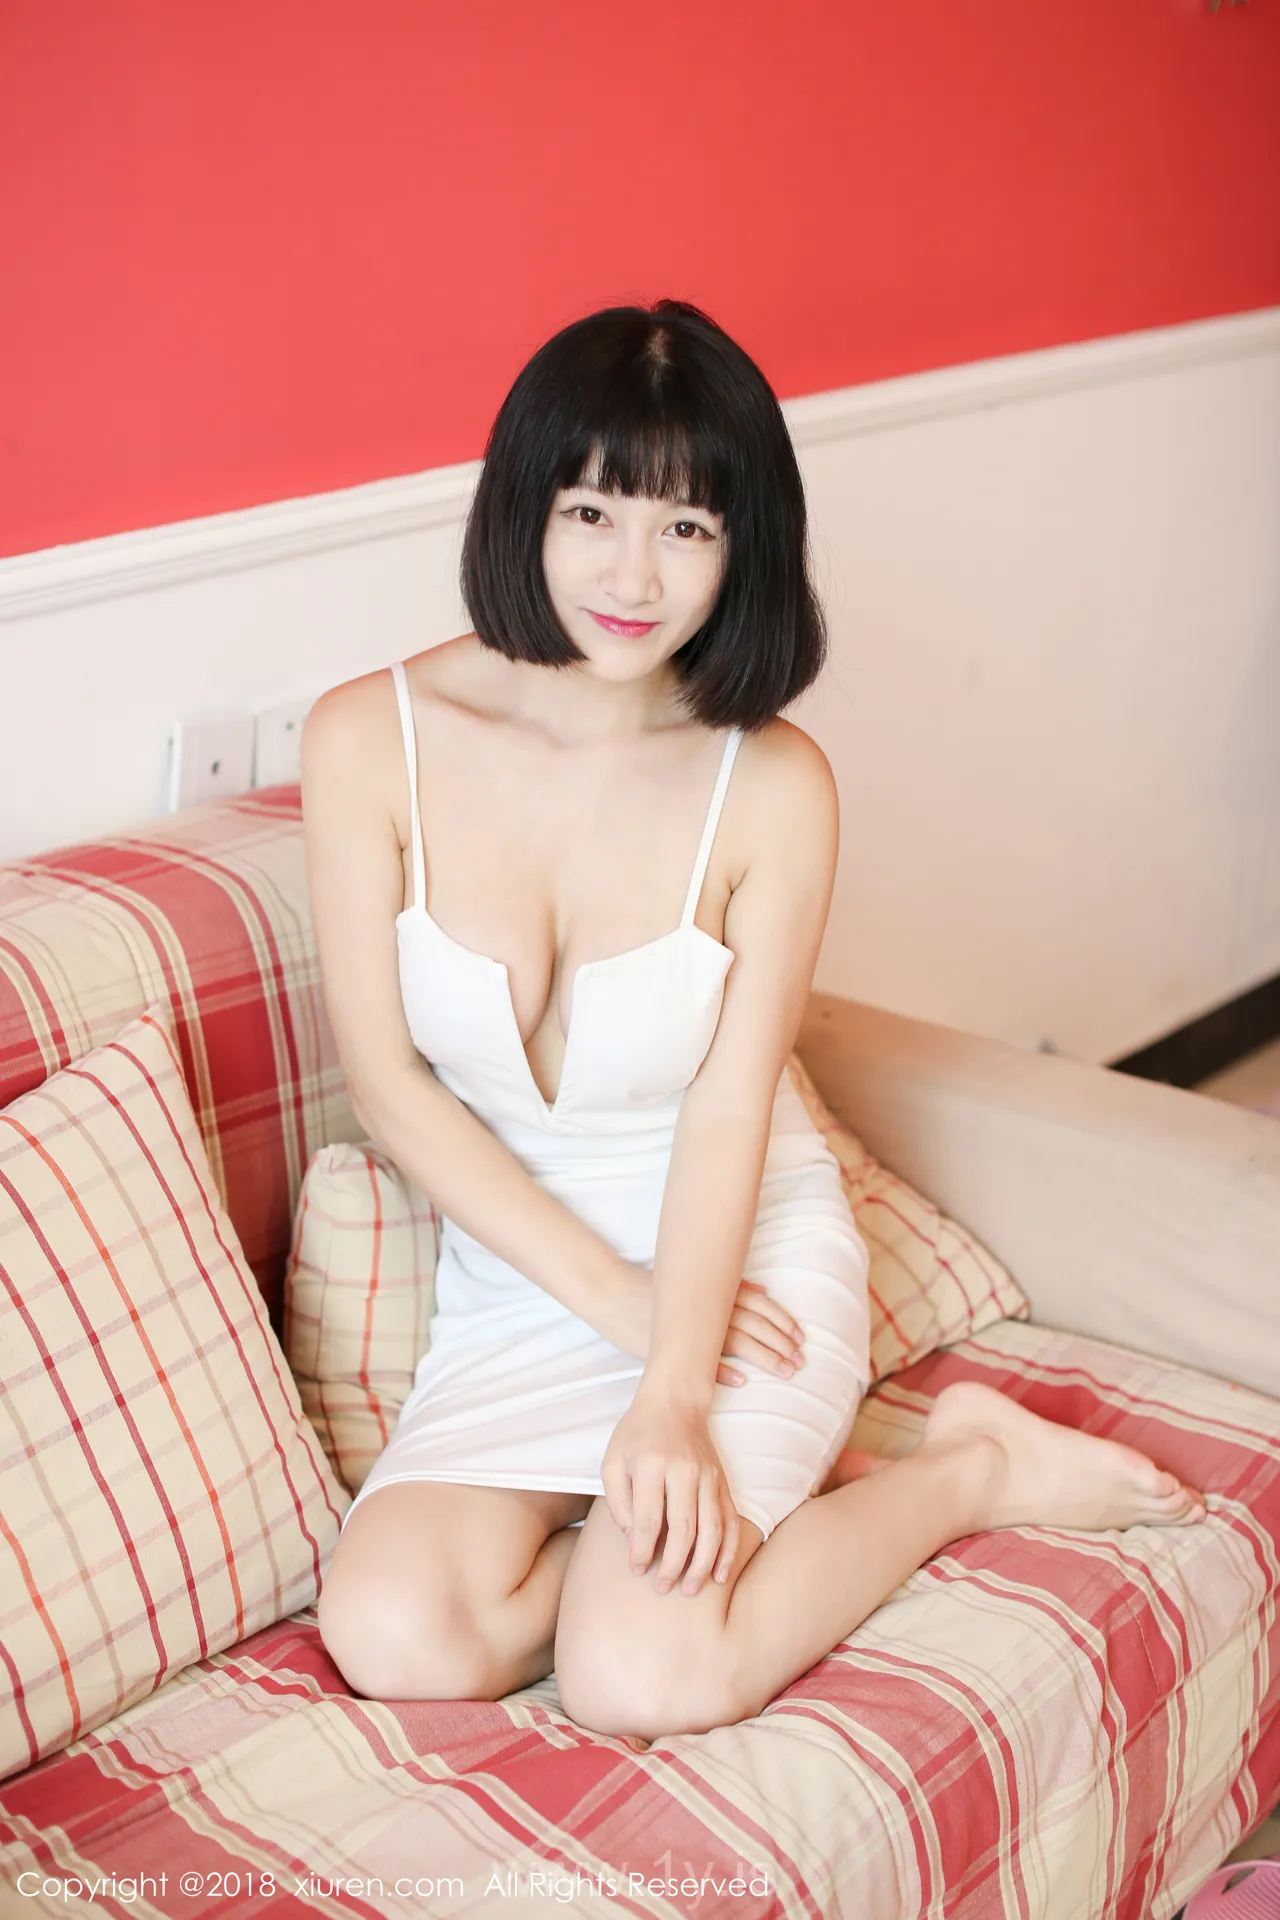 XIUREN(秀人网) NO.1012 Good-looking Asian Mature Princess 小探戈